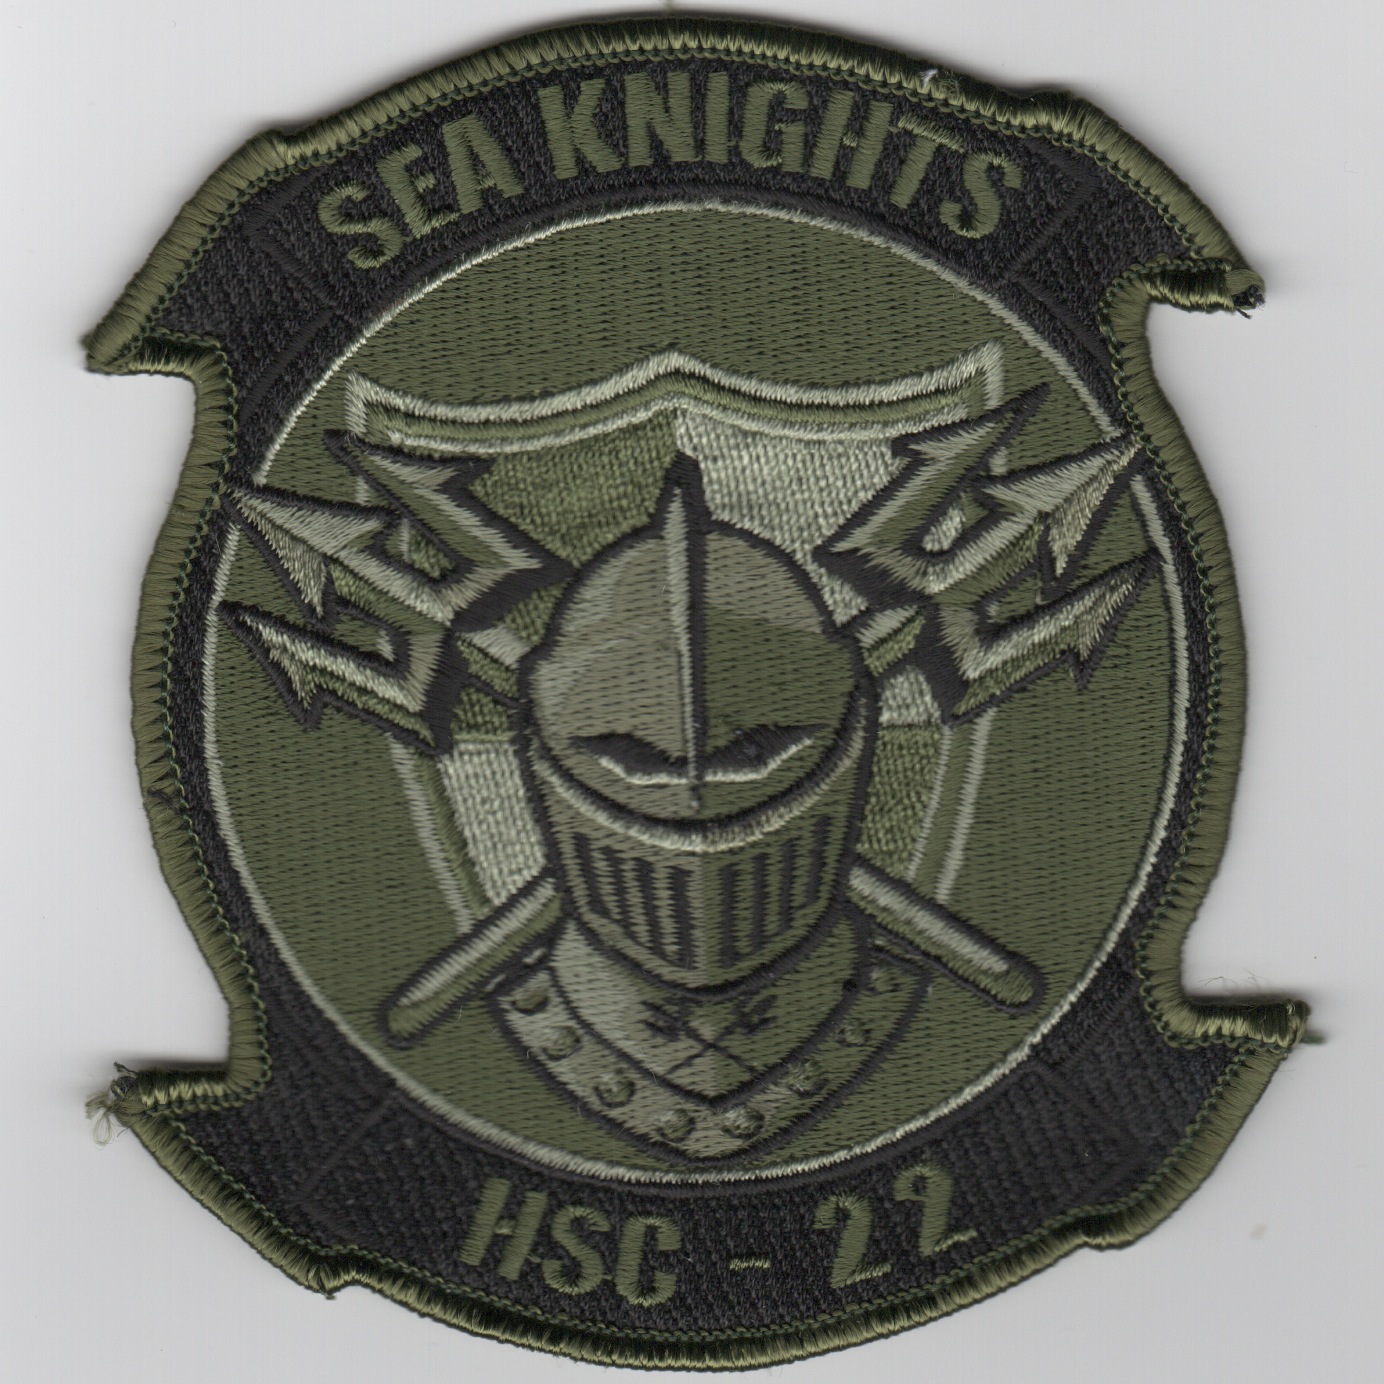 HSC-22 Squadron Patch (Subd)